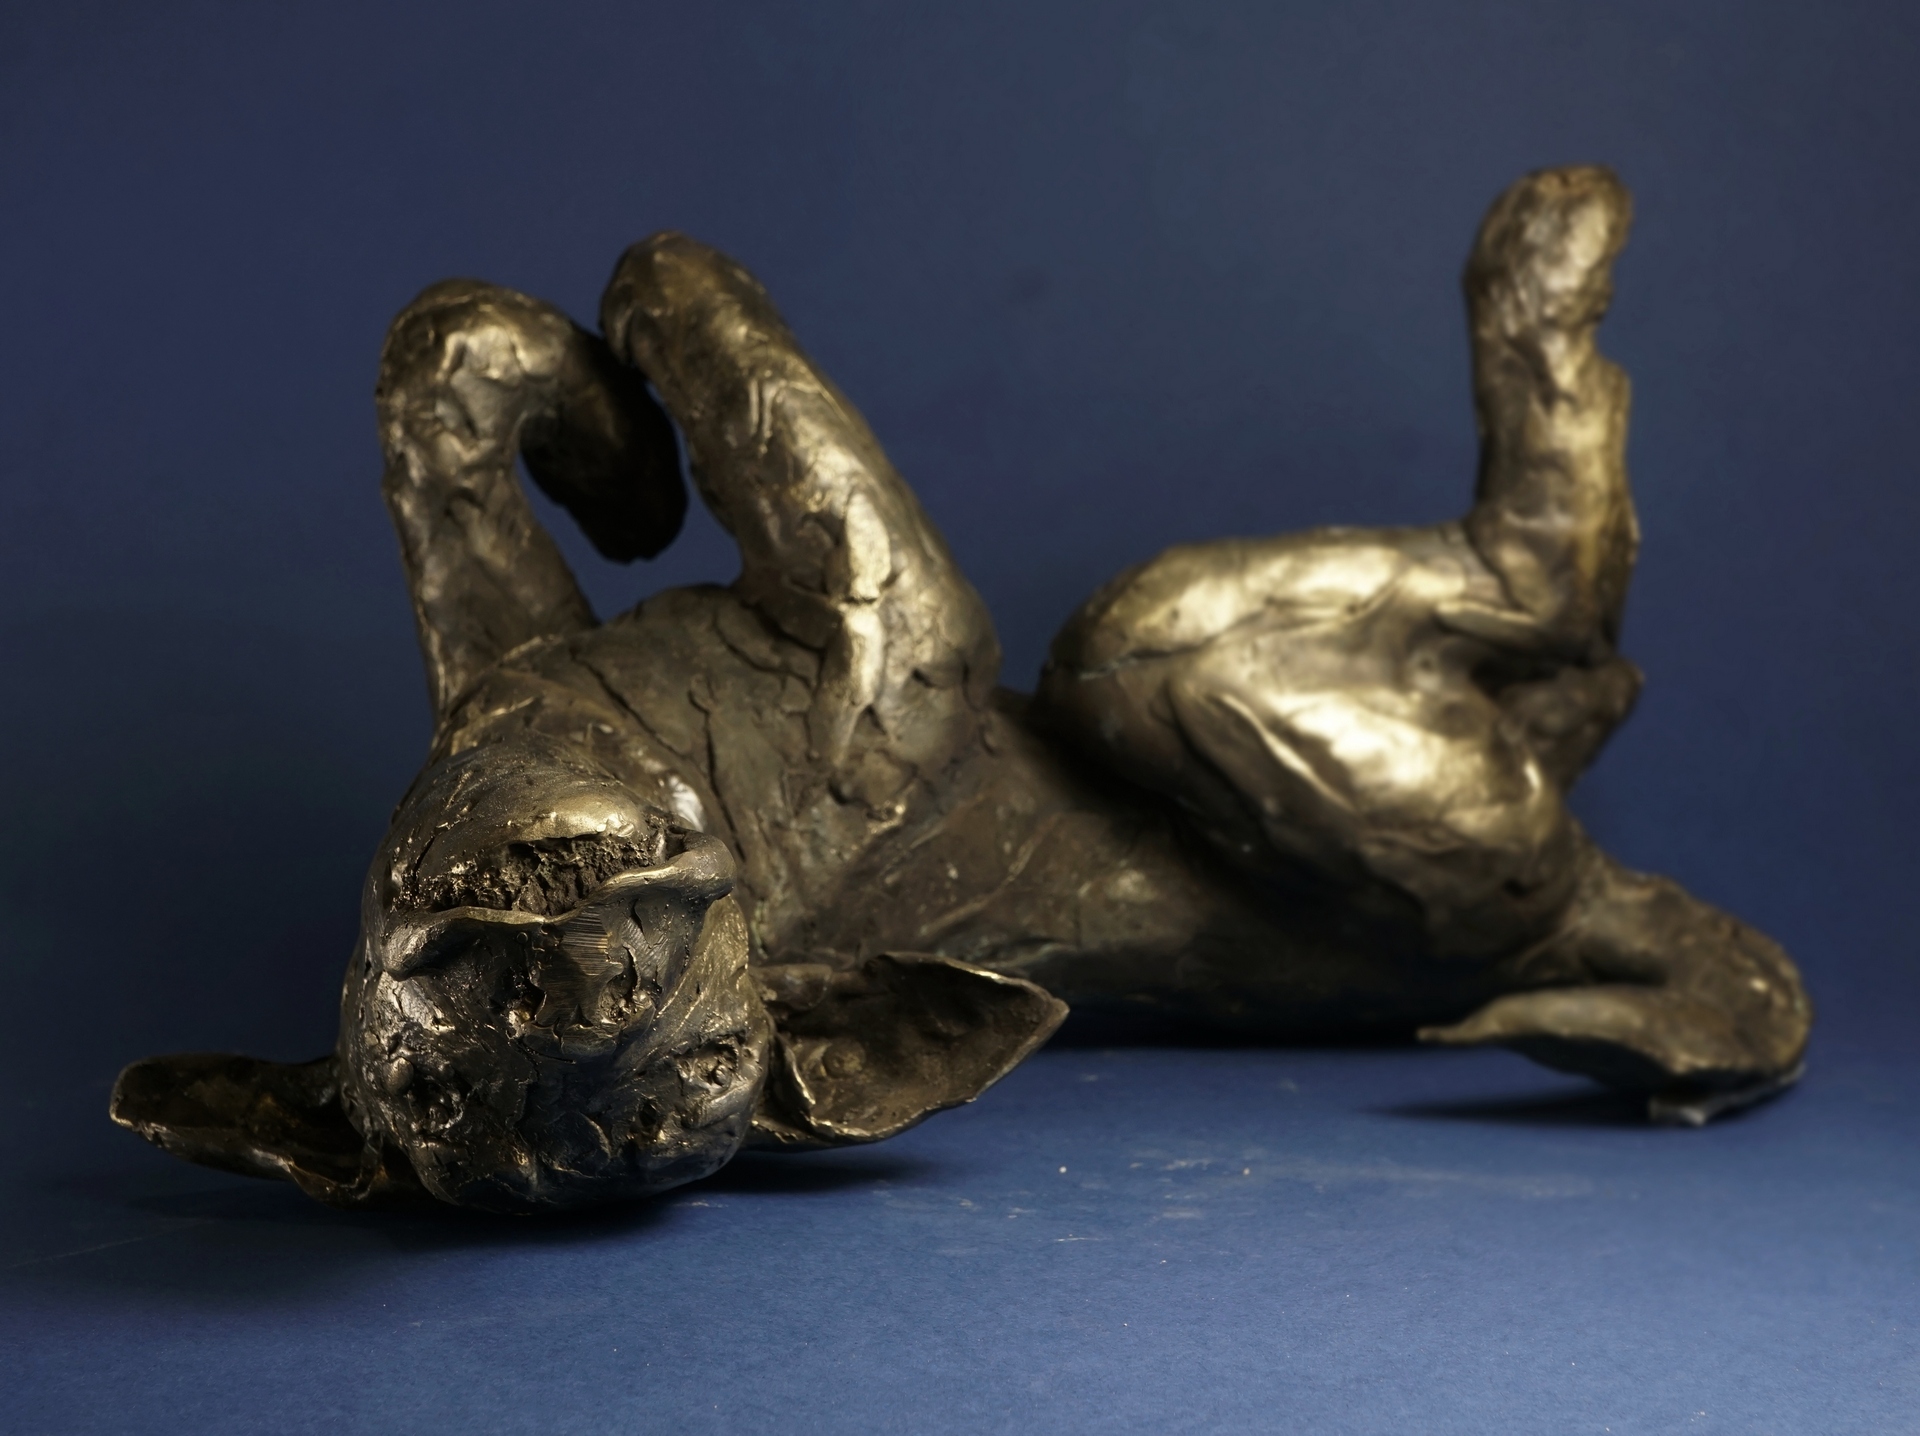 Weronika Andrzejak - zdjęcie przedstawia rzeźbę psa leżącego na plecach w radosnej pozie zabawy wykonanego z mosiądzu w złoto brązowej patynie.